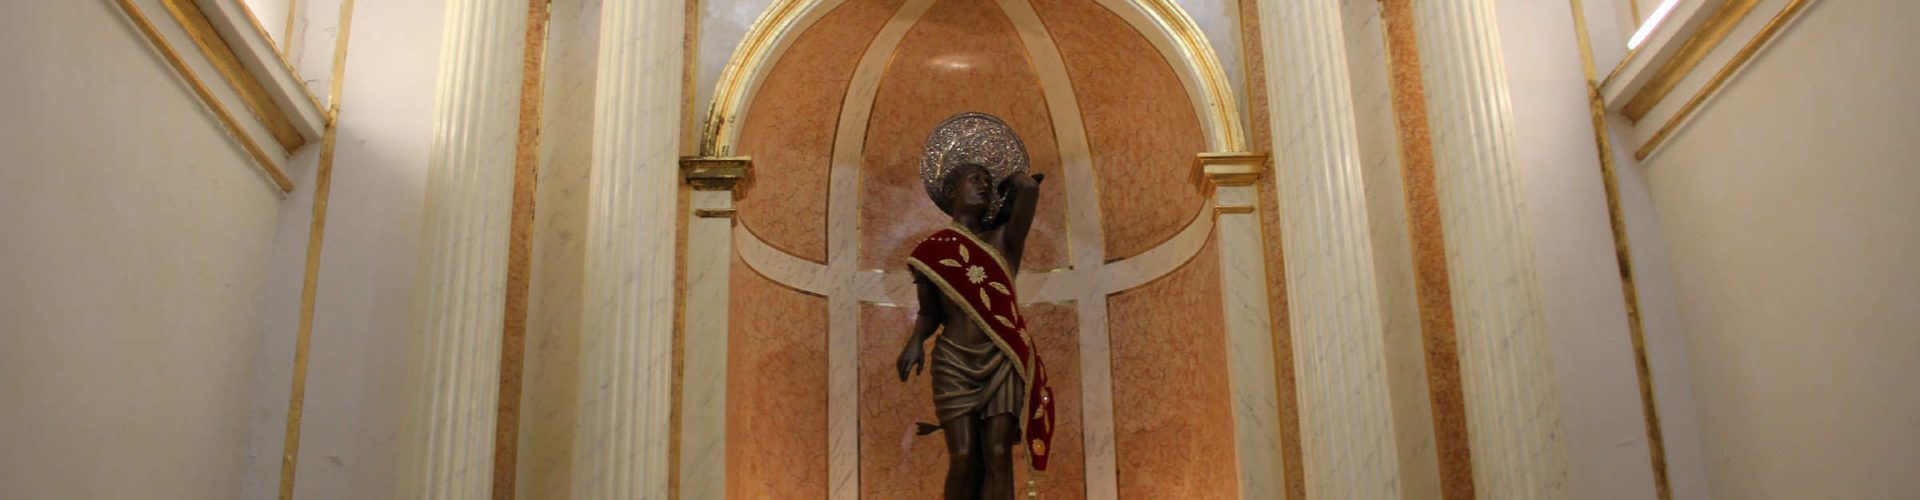 Programació religiosa a Vinaròs per a Sant Antoni i Sant Sebastià